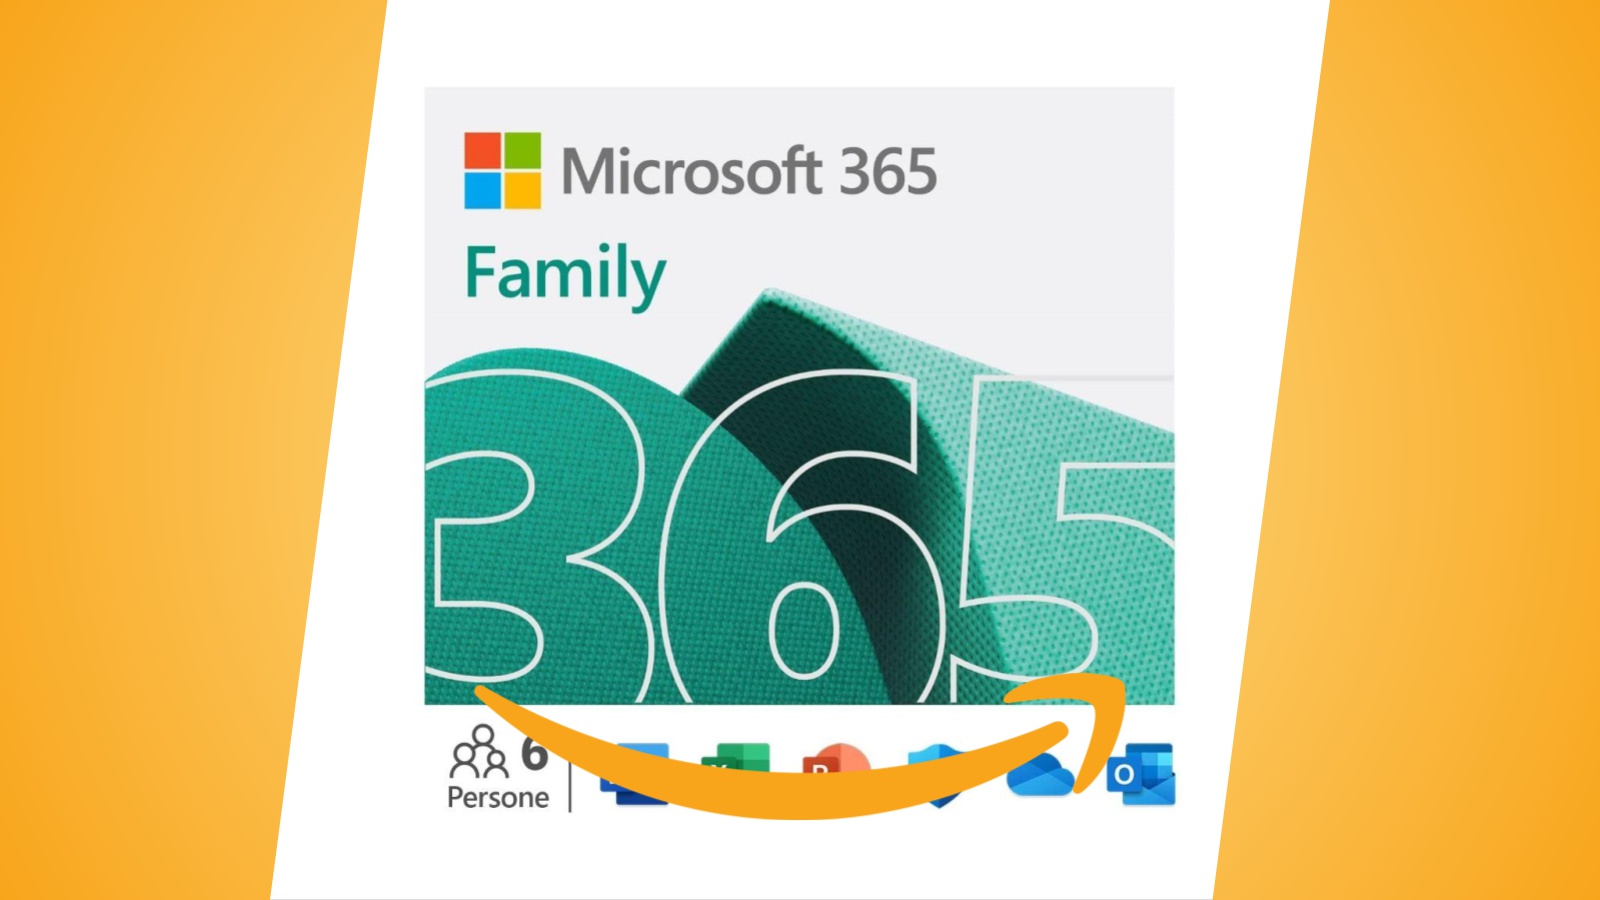 Offerte Amazon: Microsoft 365 Family - Fino a 6 persone per 12 mesi in sconto